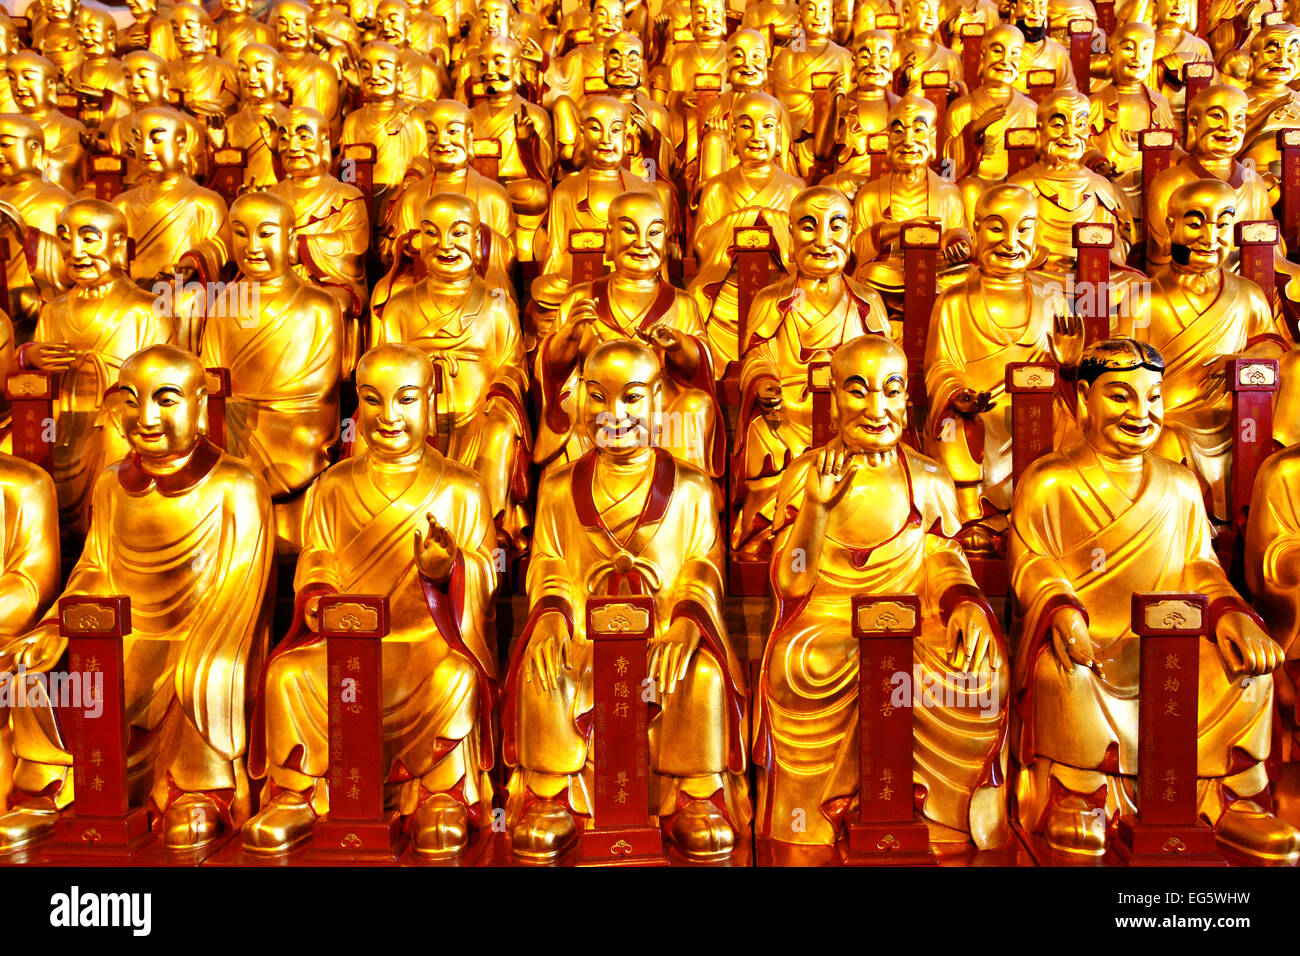 Goldene Statuen von Lohans in Longhua buddhistischen Tempel, Shanghai, China Stockfoto